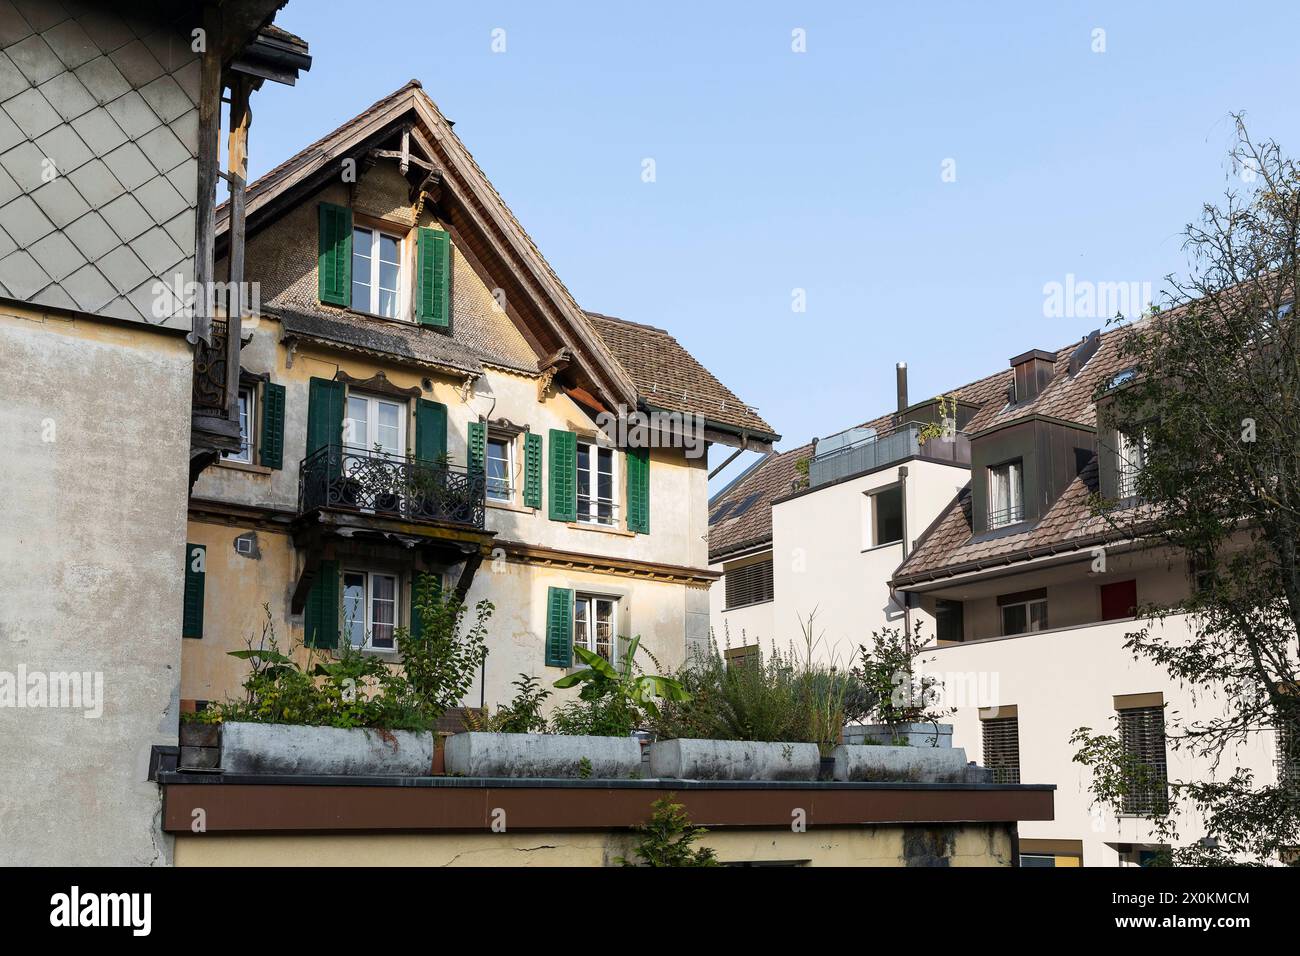 eng bebaut mit alten Gebäuden und neuen Fassaden erlebt man die Altstadt von Weesen, St. Gallen, Schweiz *** The old town of Weesen, St Gallen, Switze Stock Photo